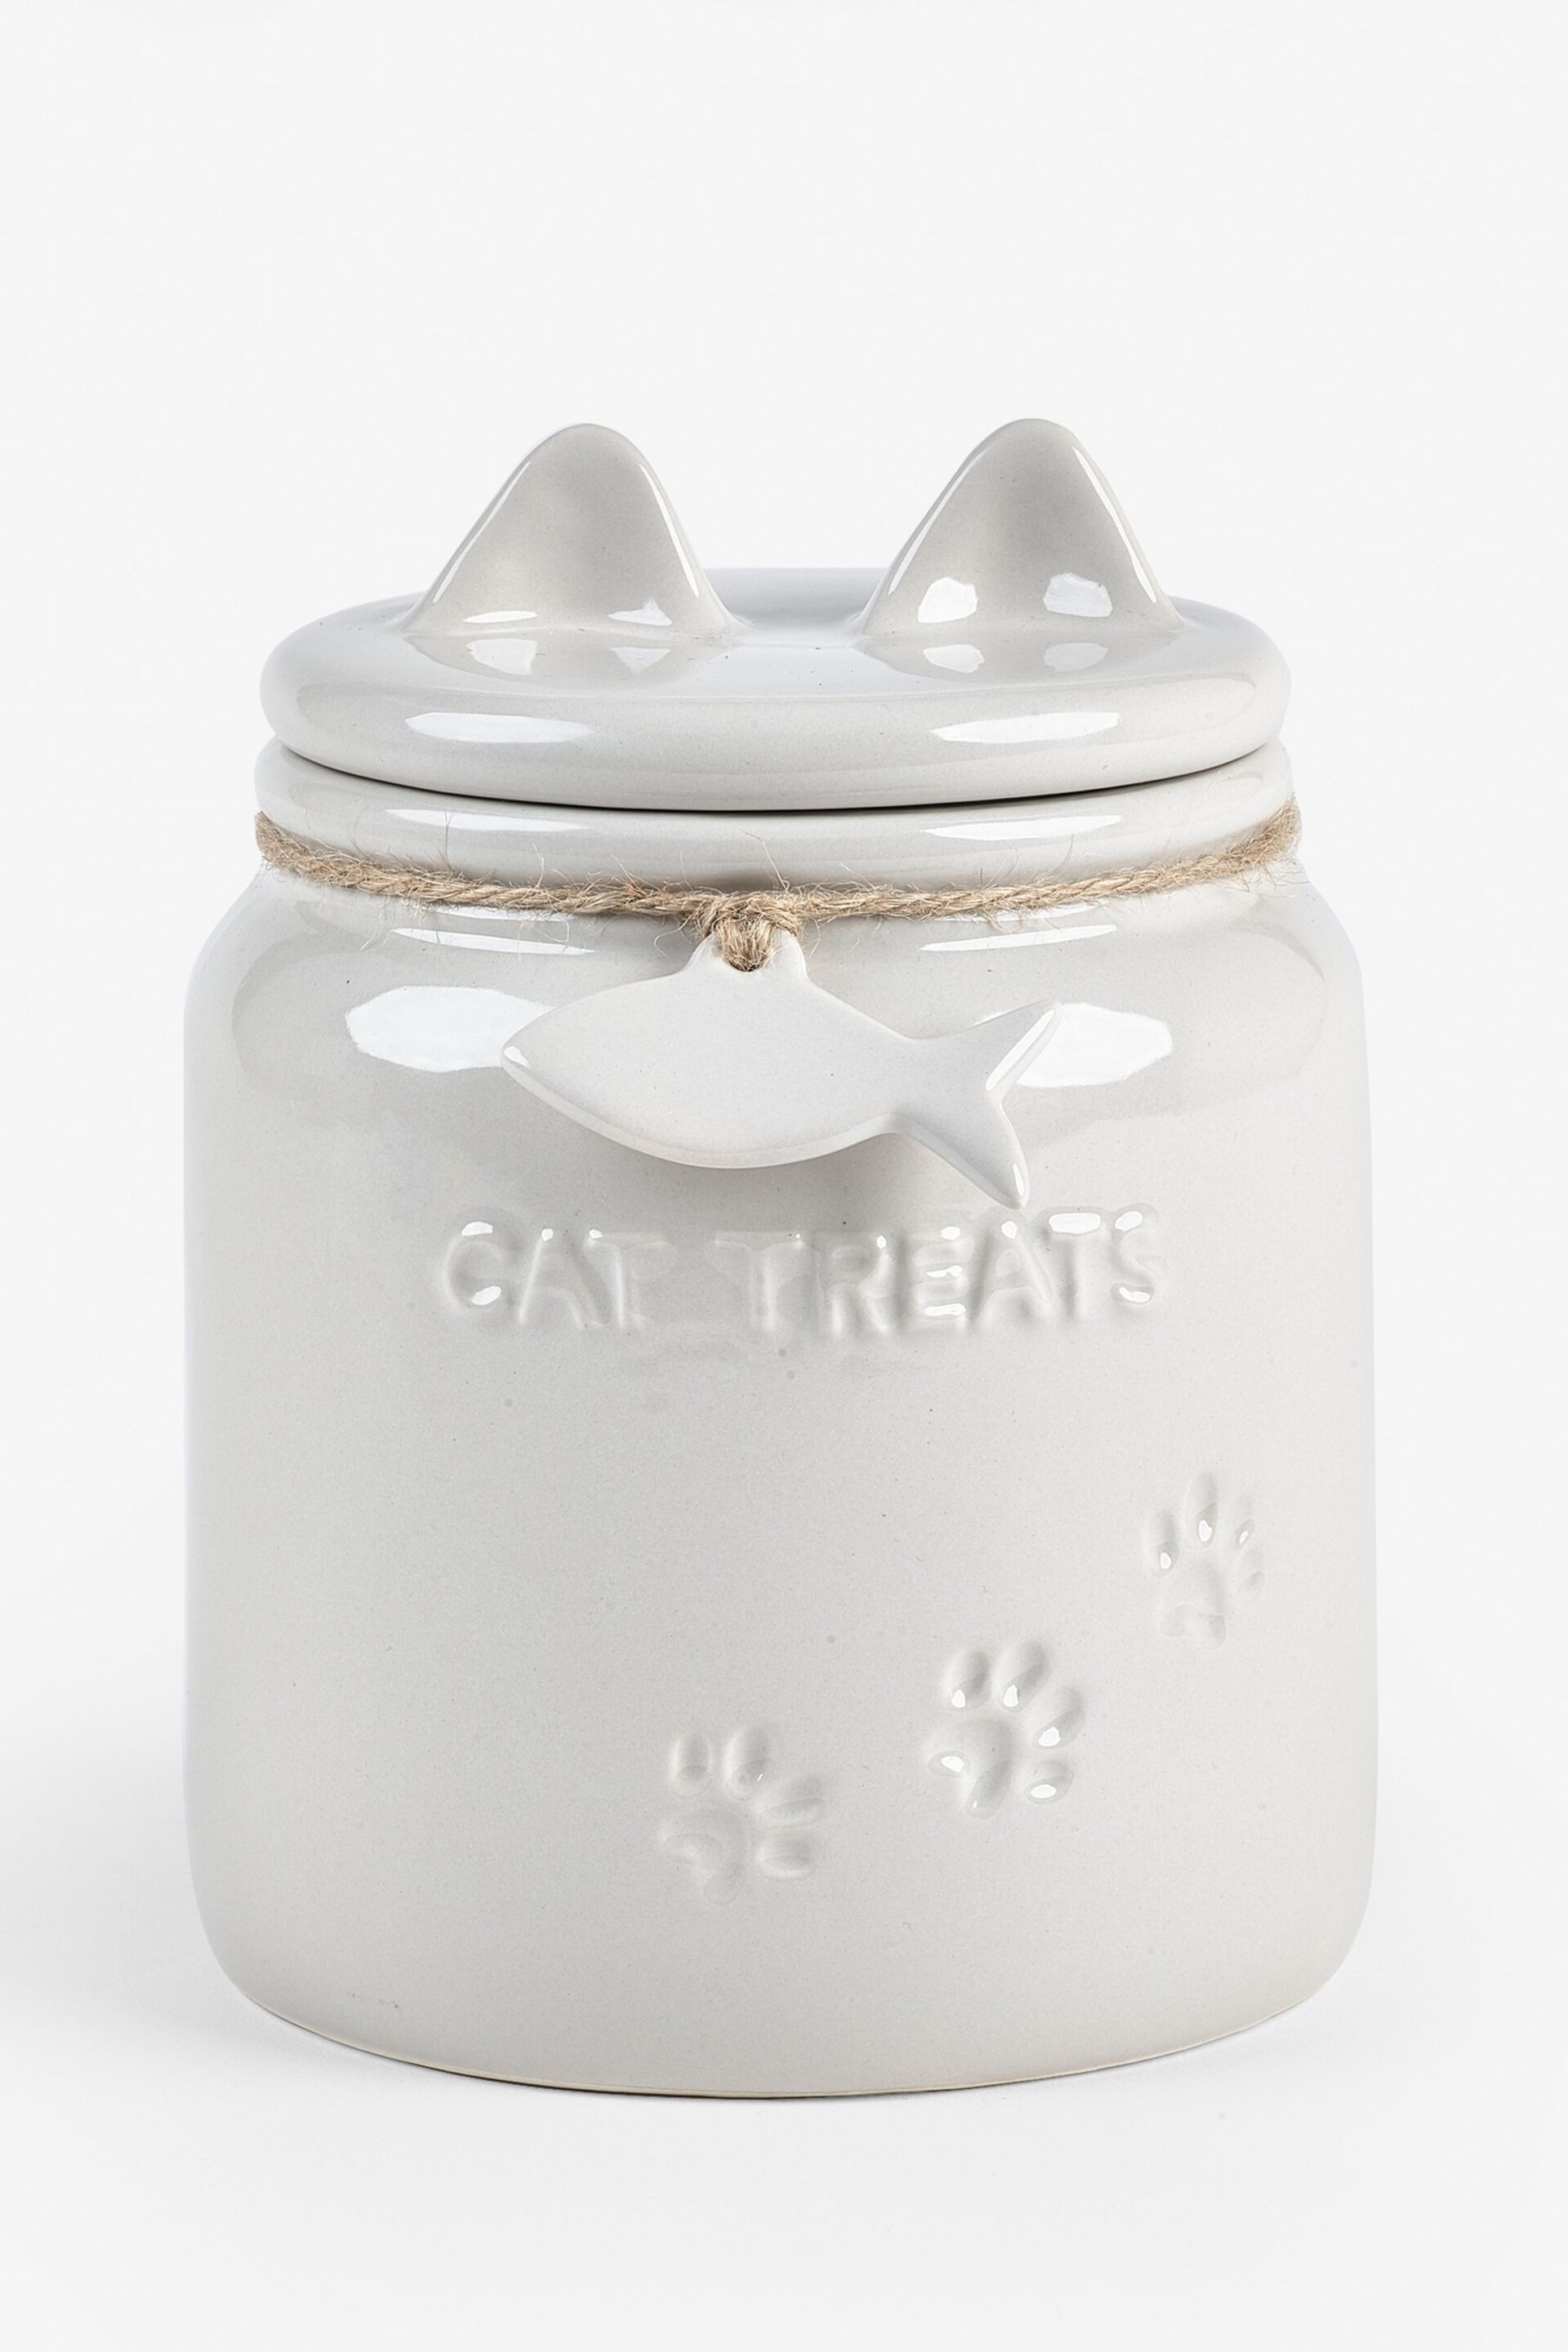 Grey Ceramic Cat Treat Jar - Image 3 of 3